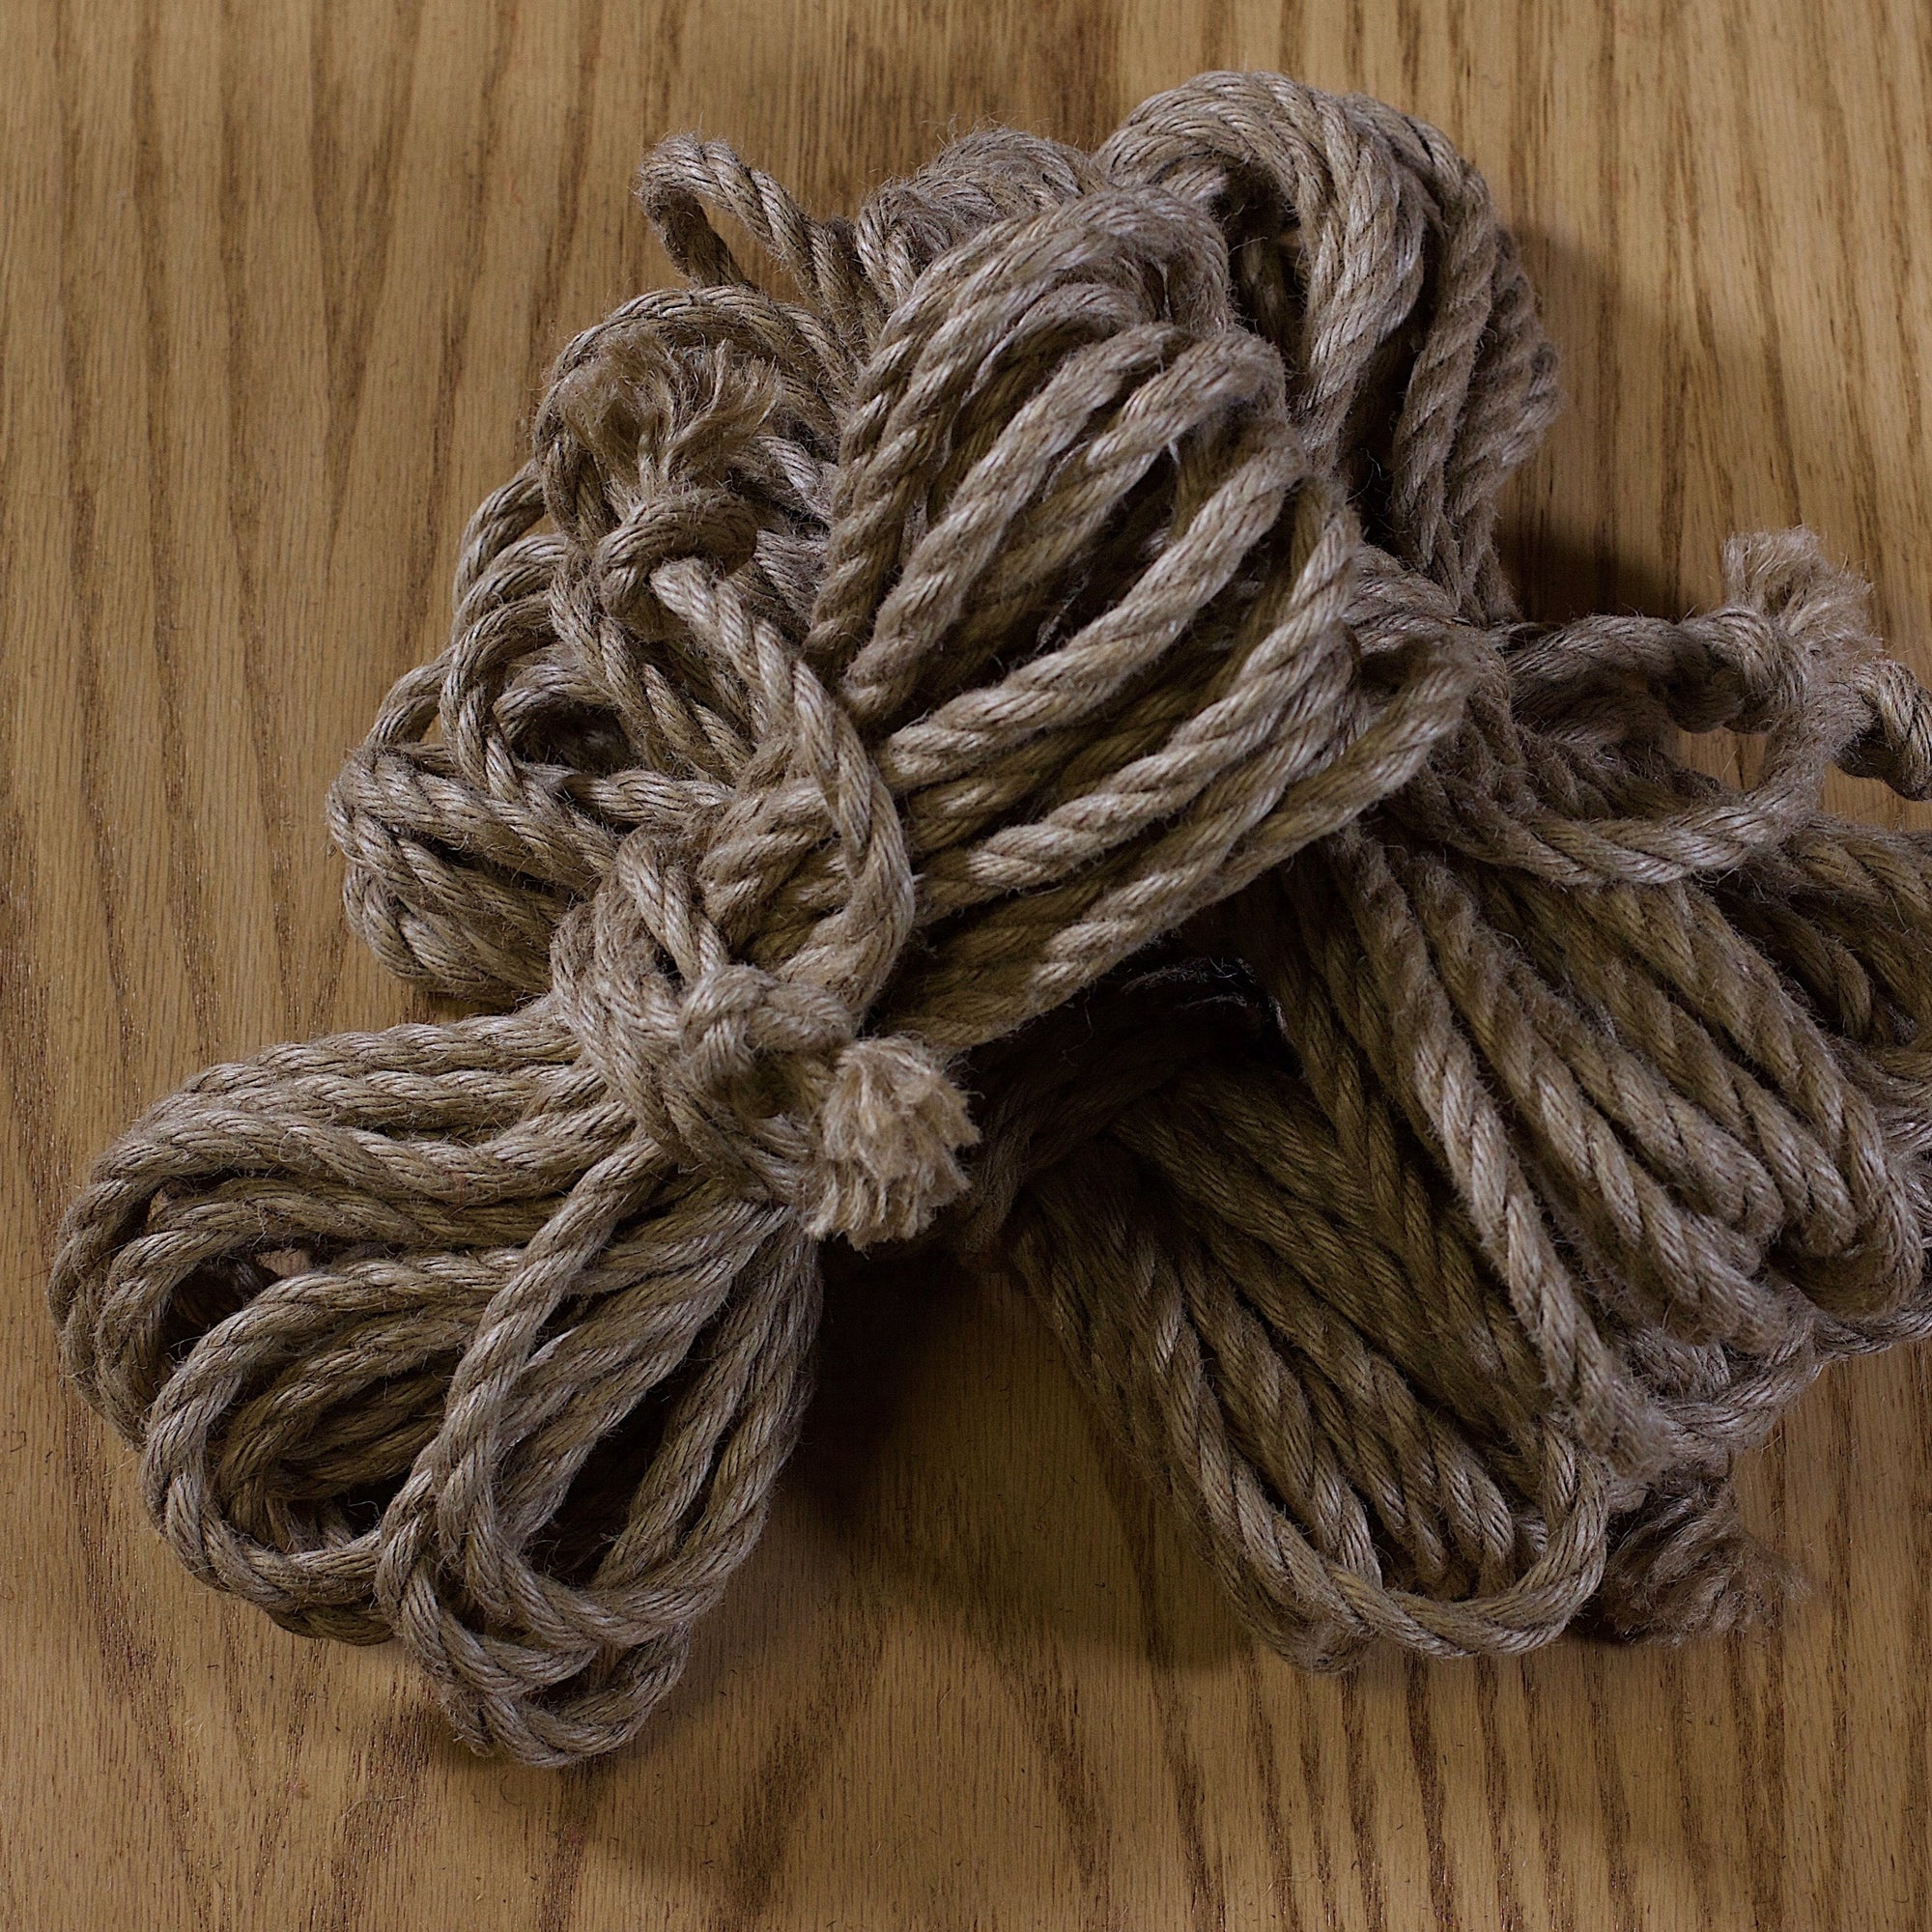 Rope for Shibari Tagged shibari - Tensionmtl